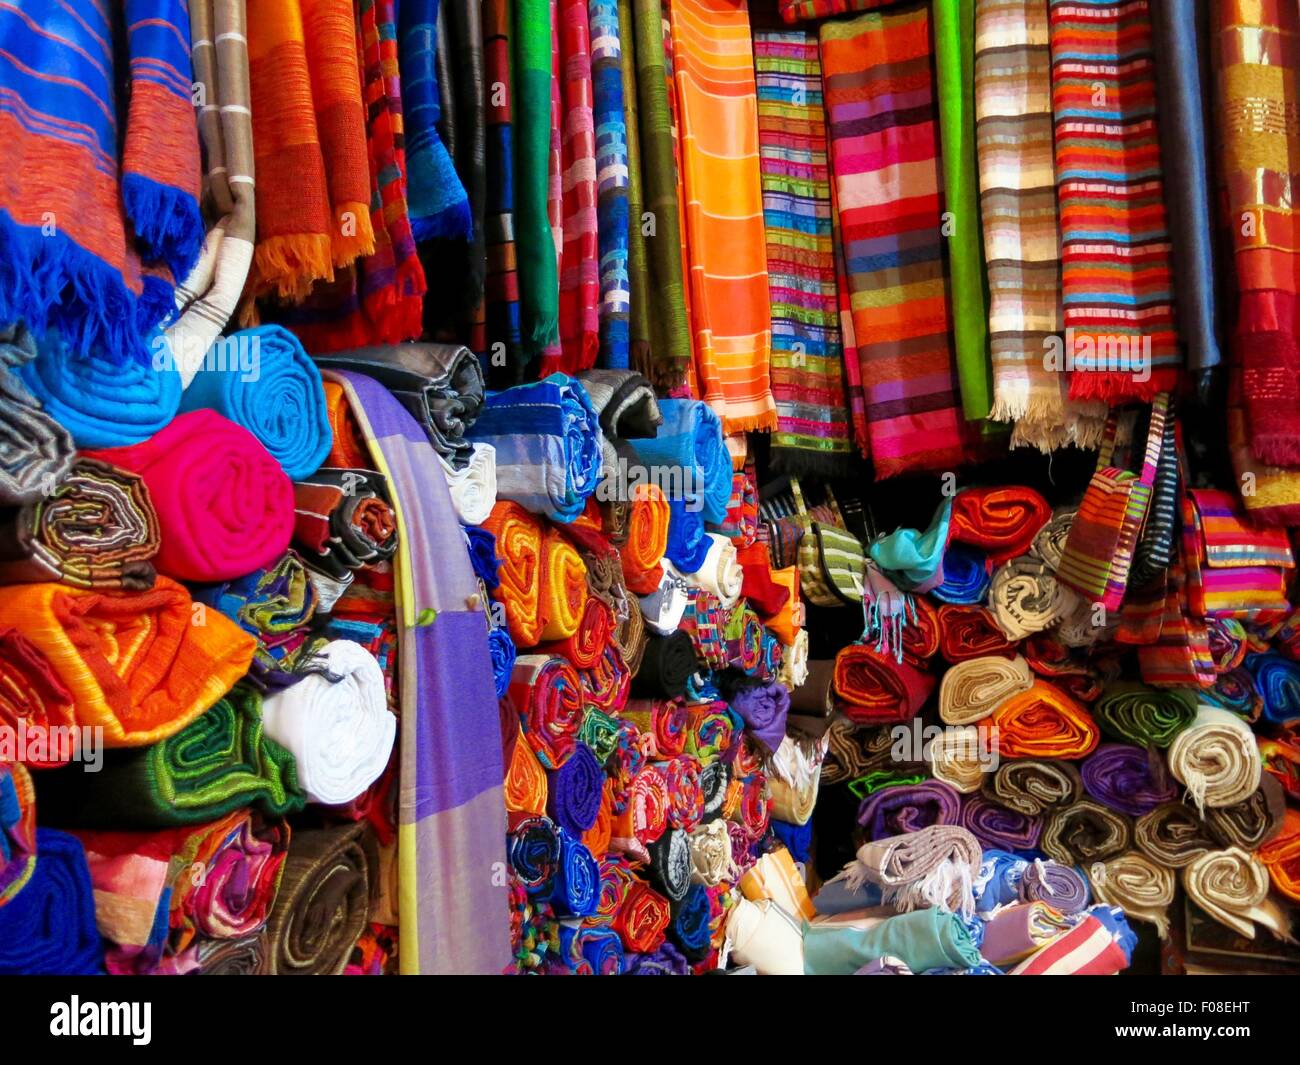 En el interior de una tienda de material marroquíes que vendía alfombras, sacos, mantas, etc. Foto de stock